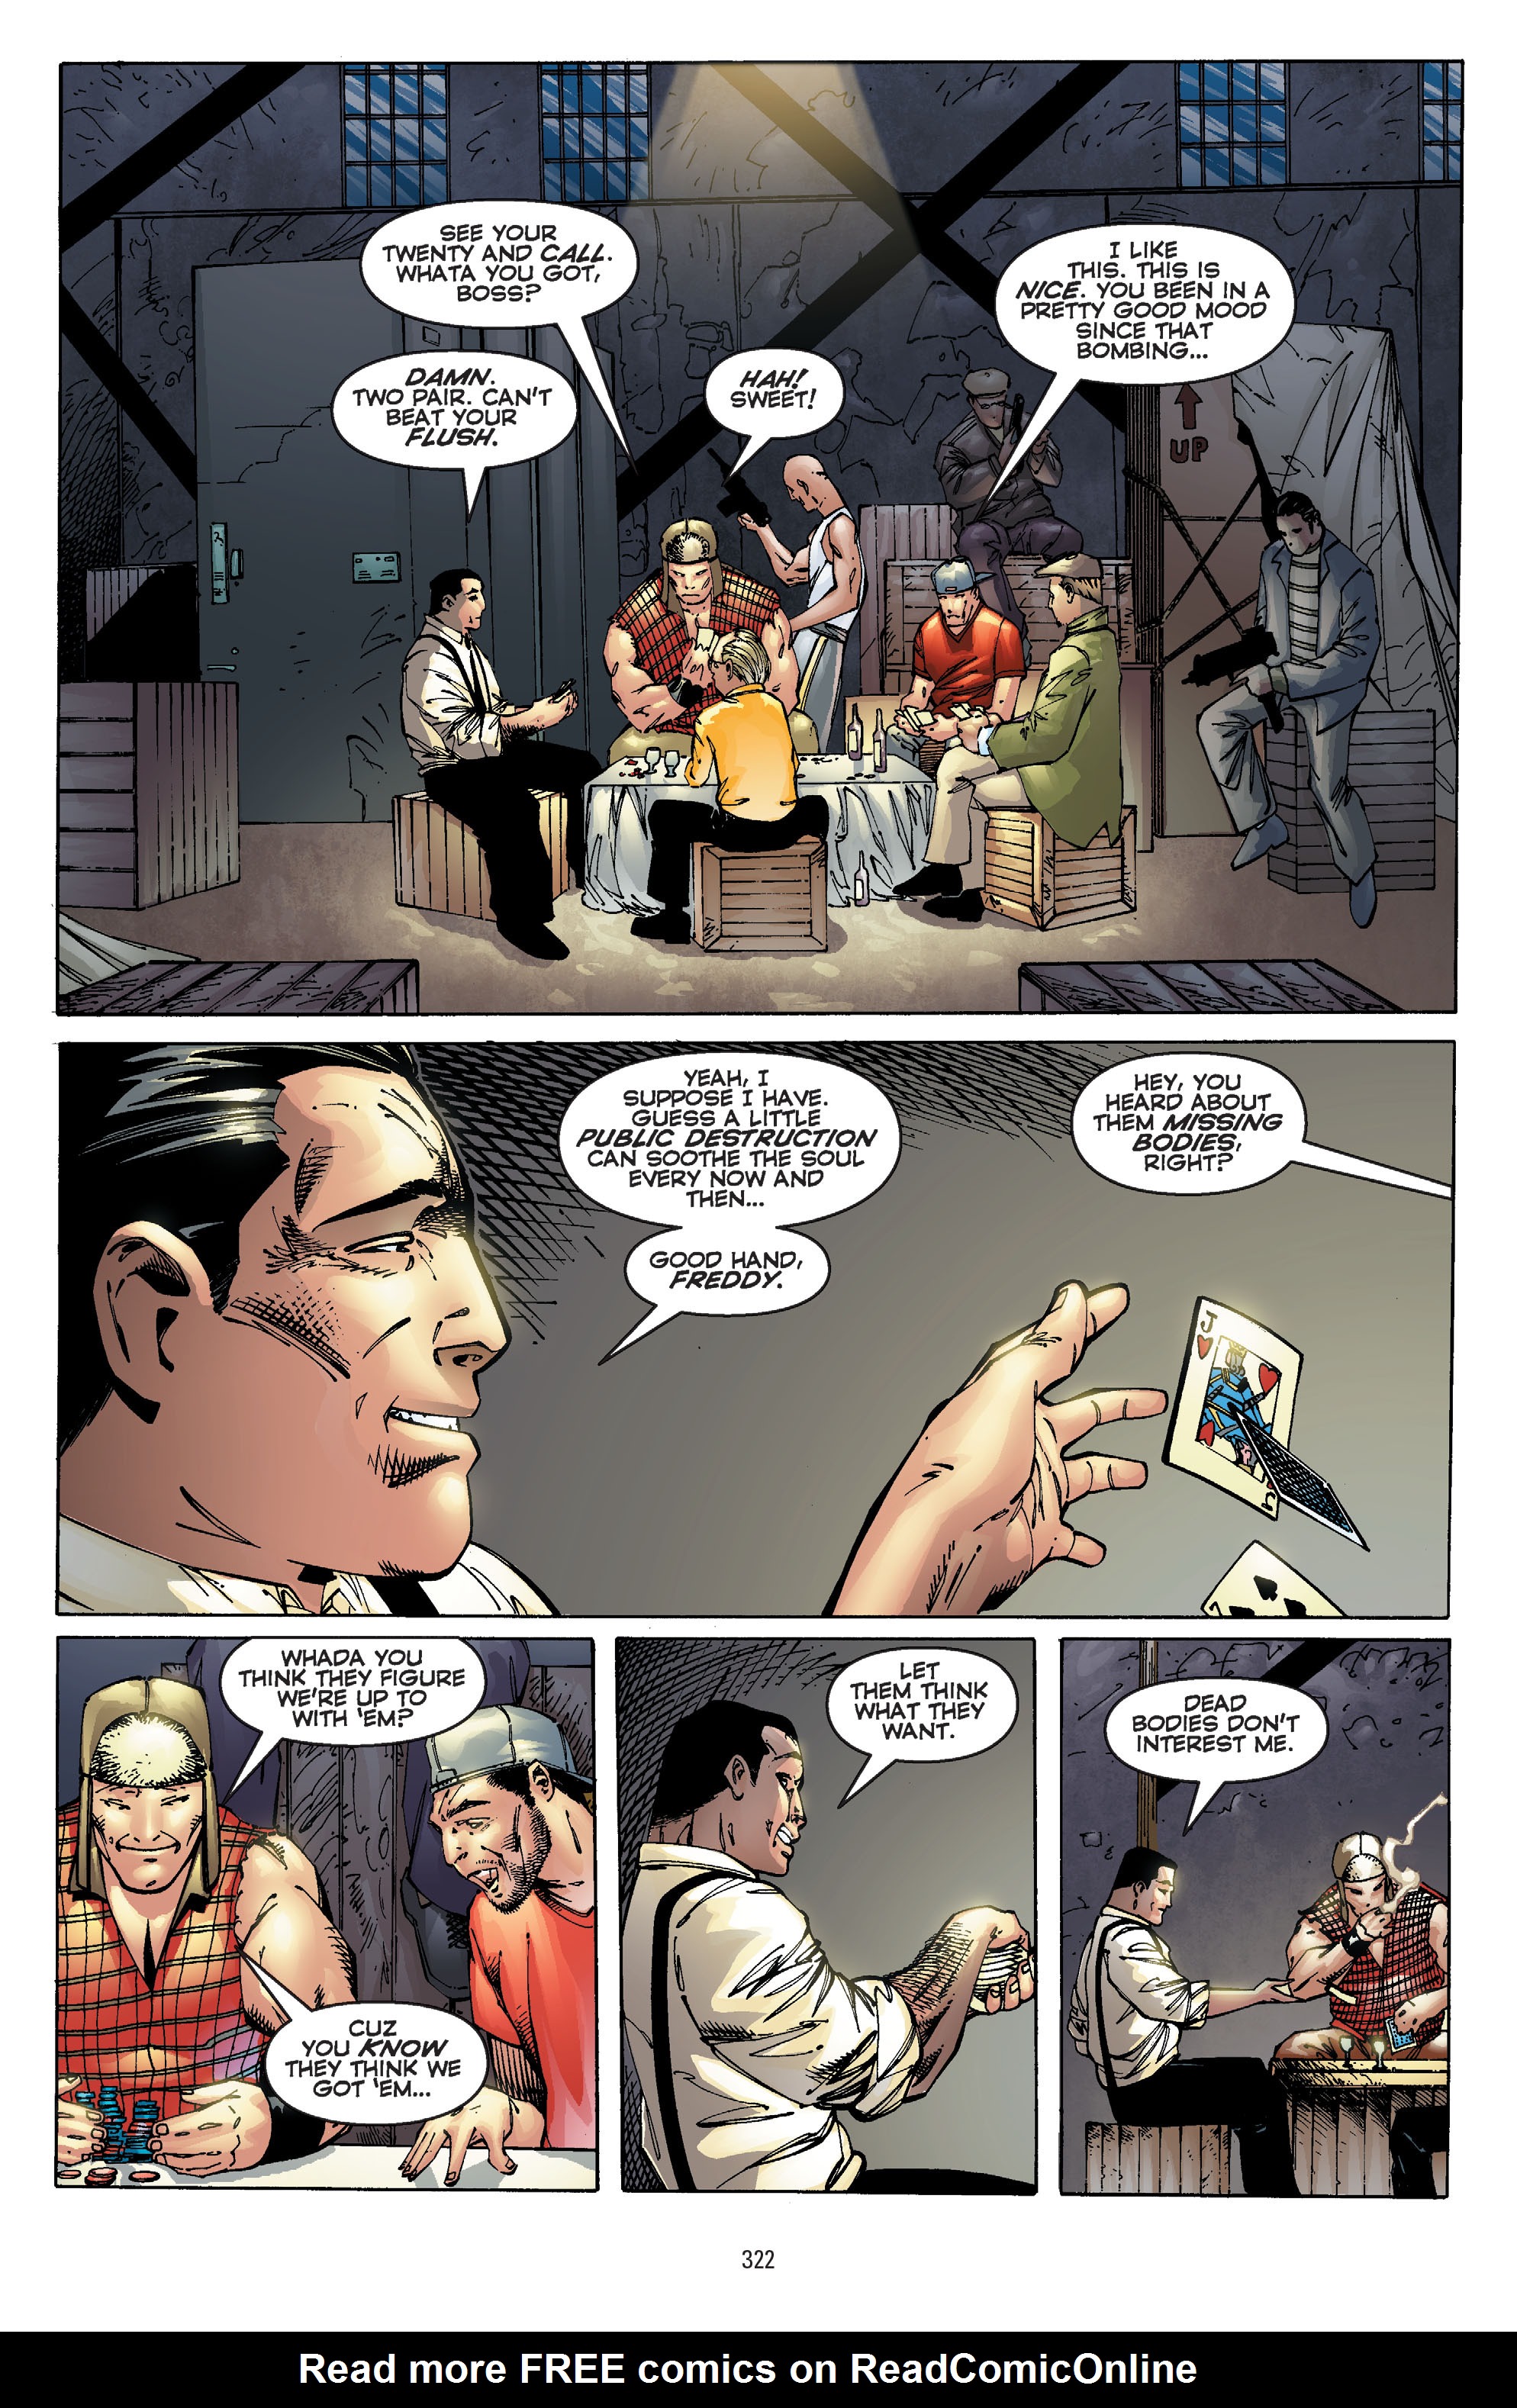 DC Comics/Dark Horse Comics: Justice League Full #1 - English 312